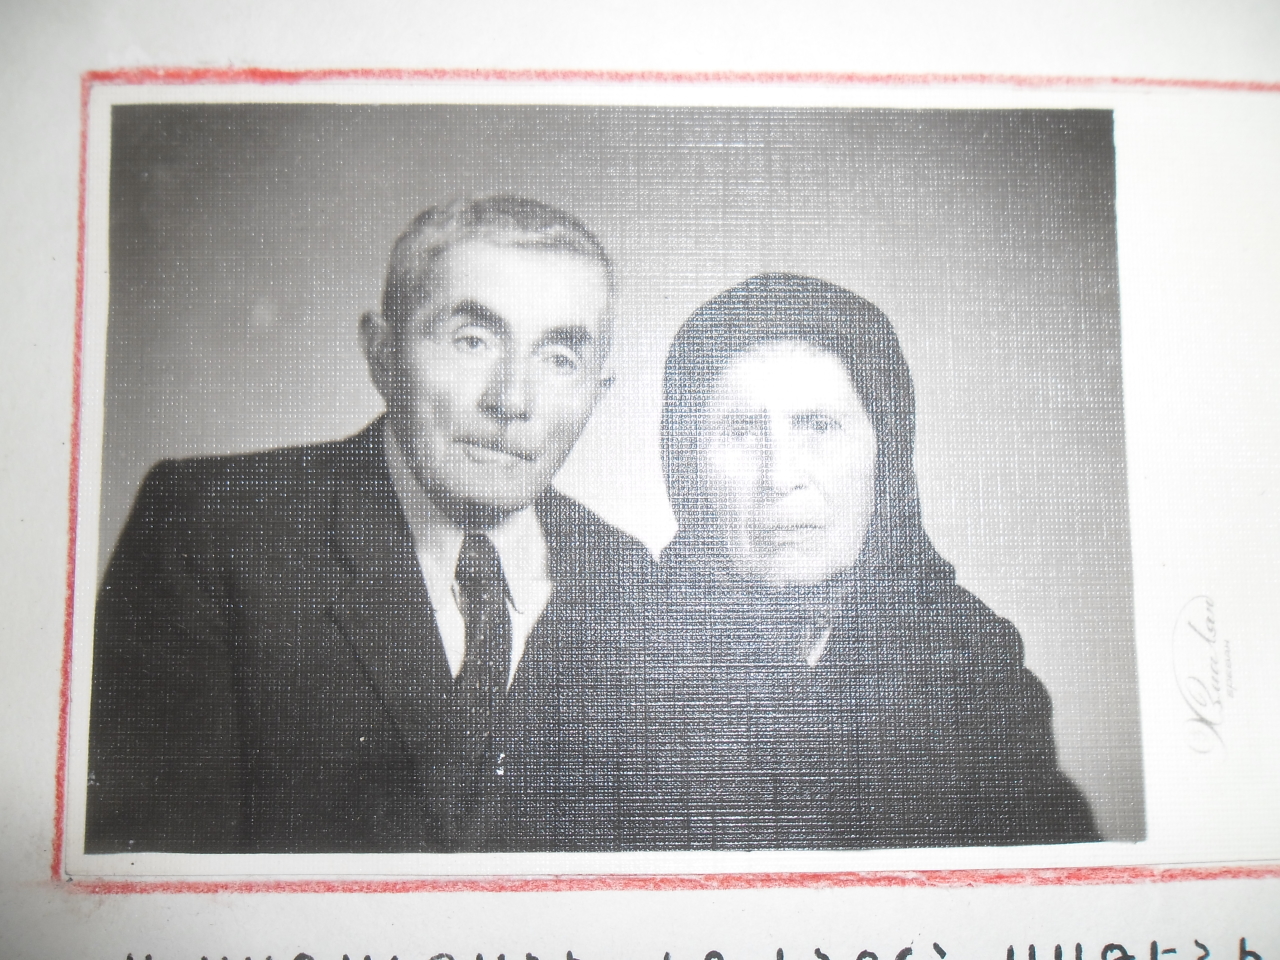 Ուսուցիչ Ավետիս Ղարիբի Սառաջյանը  իր կնոջ՝ Սաթենիկի հետ